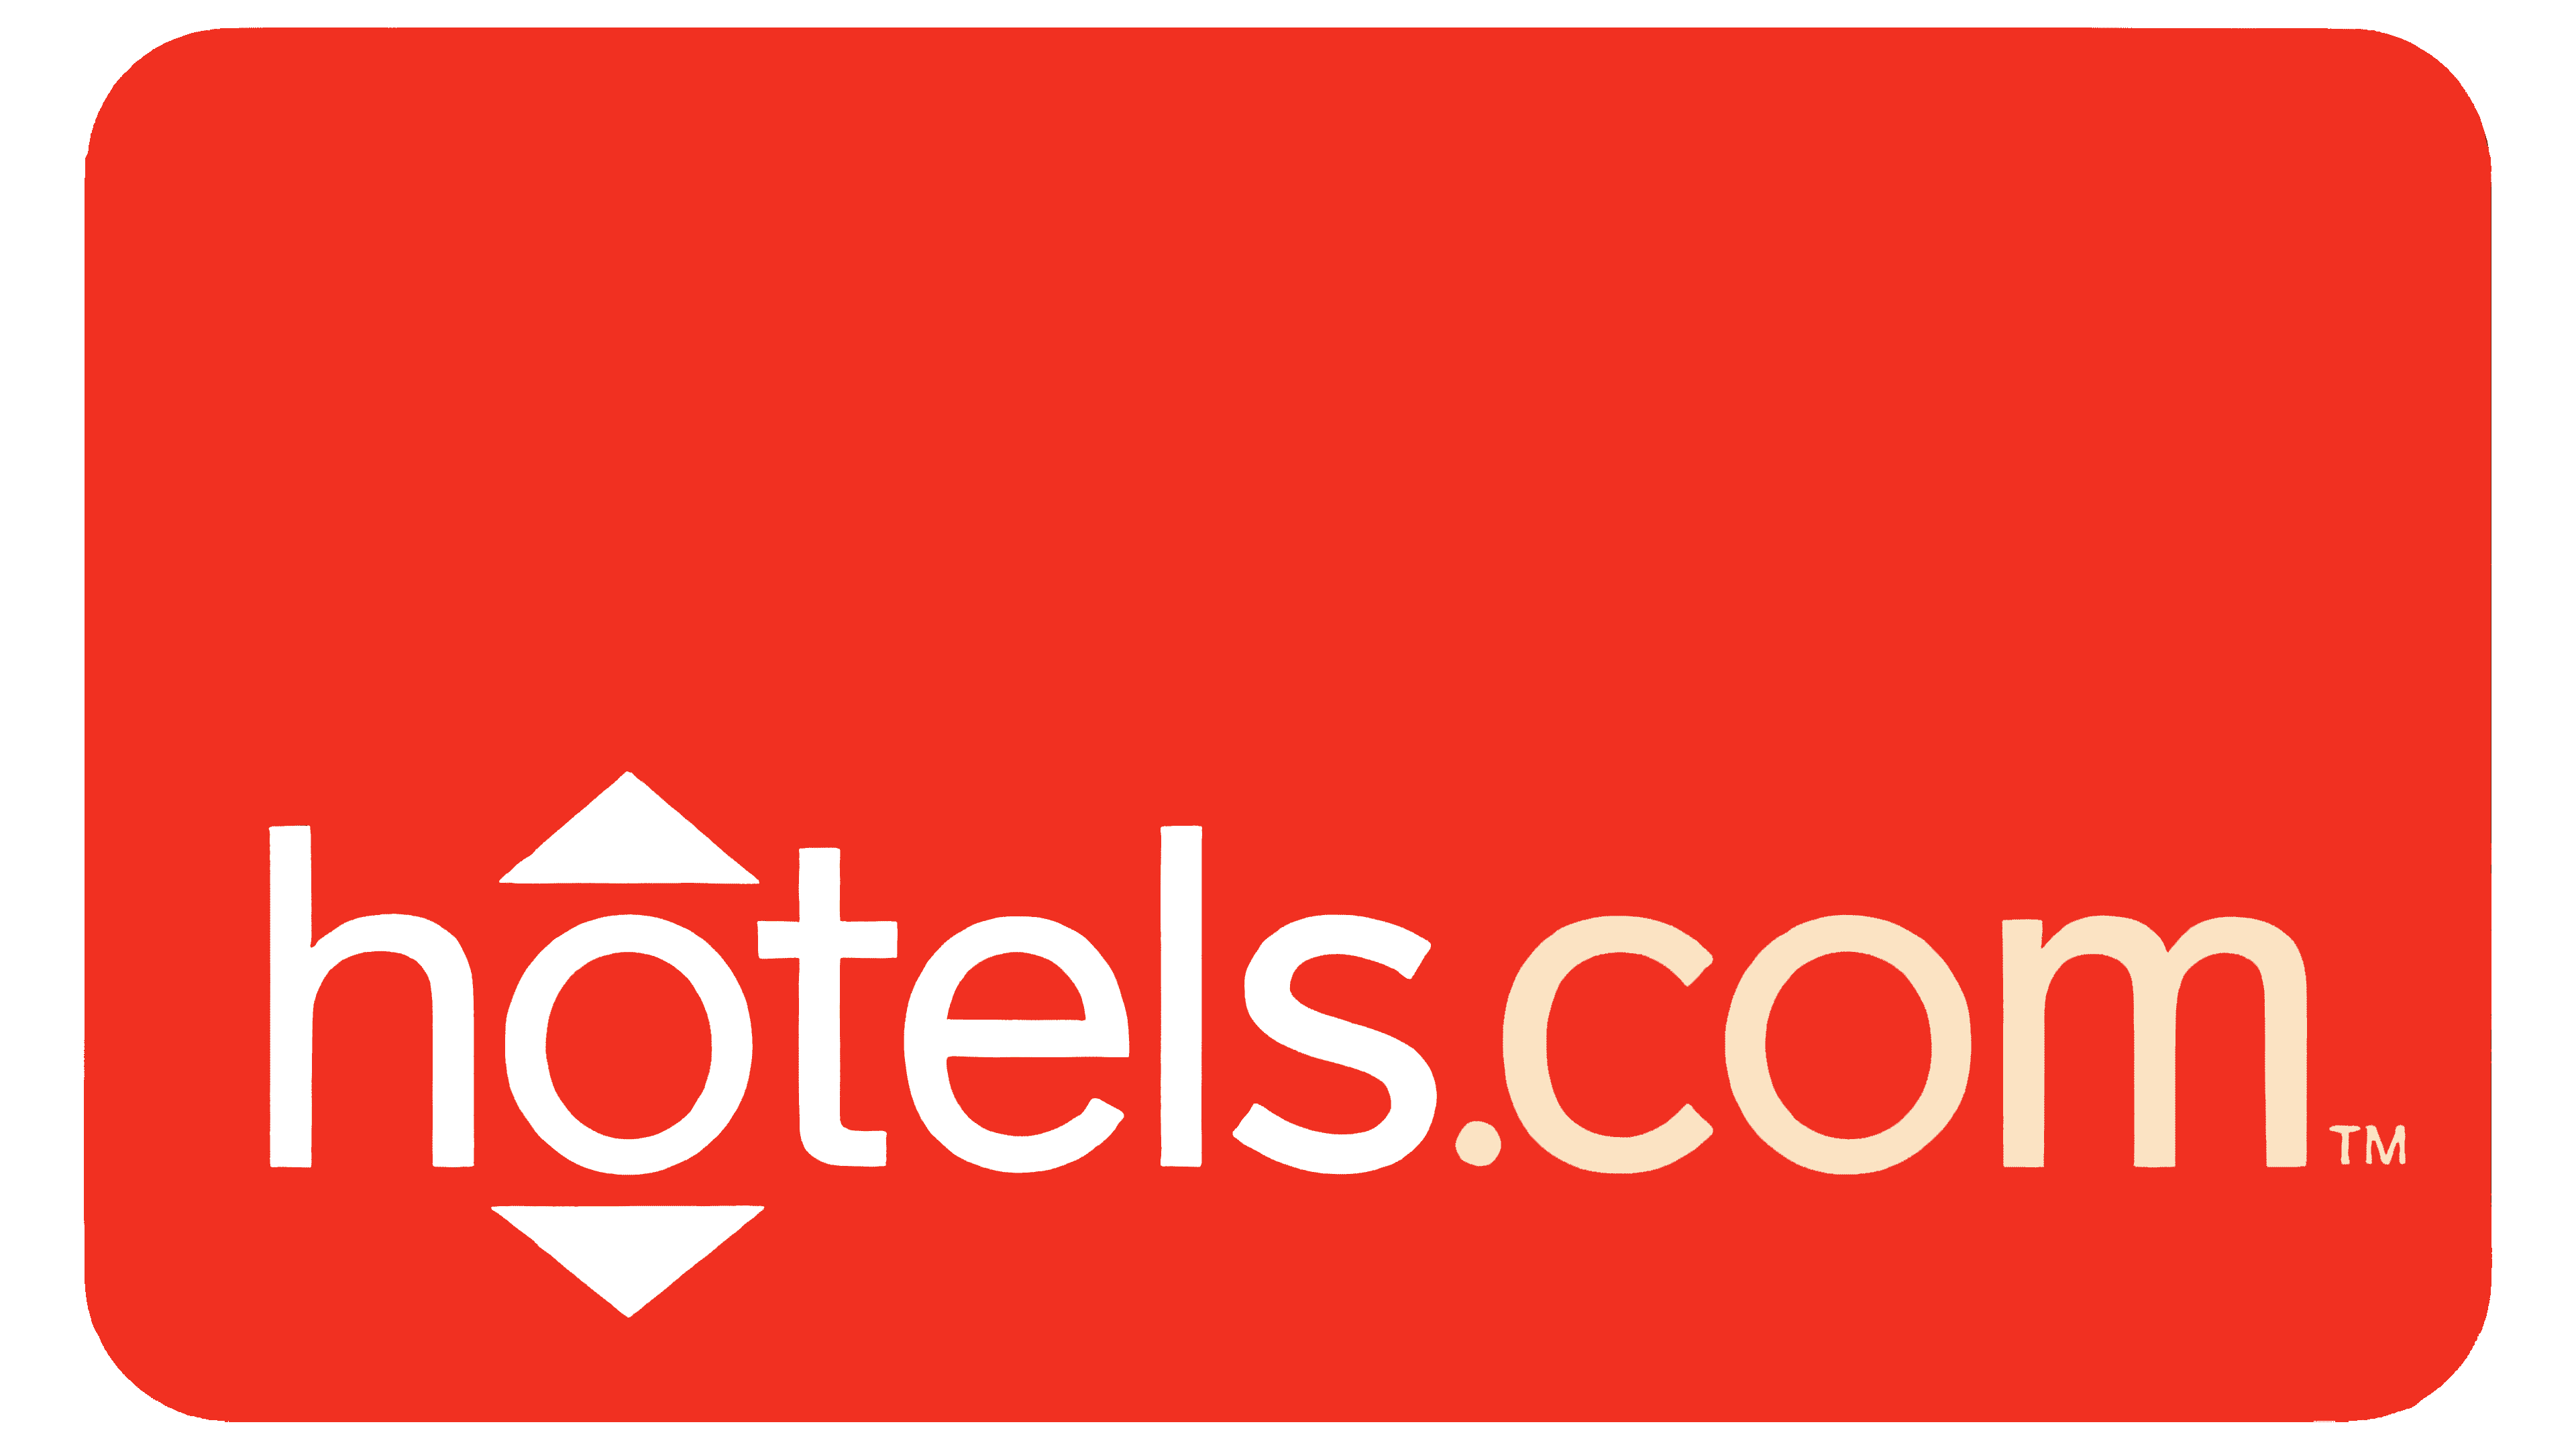 Hotels.com Symbol